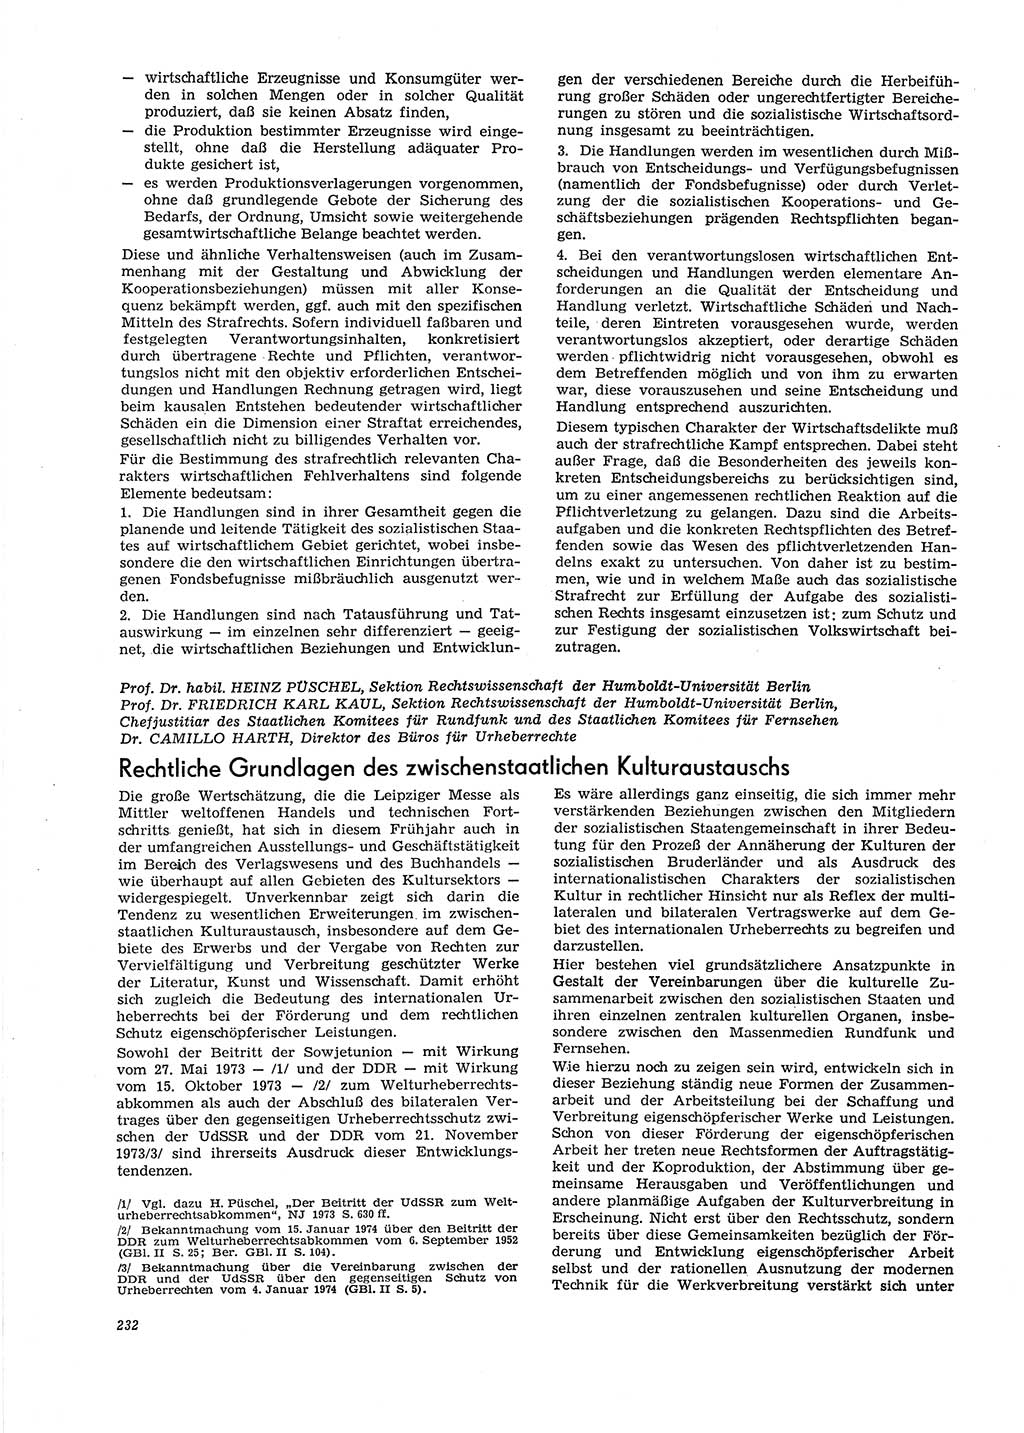 Neue Justiz (NJ), Zeitschrift für Recht und Rechtswissenschaft [Deutsche Demokratische Republik (DDR)], 29. Jahrgang 1975, Seite 232 (NJ DDR 1975, S. 232)